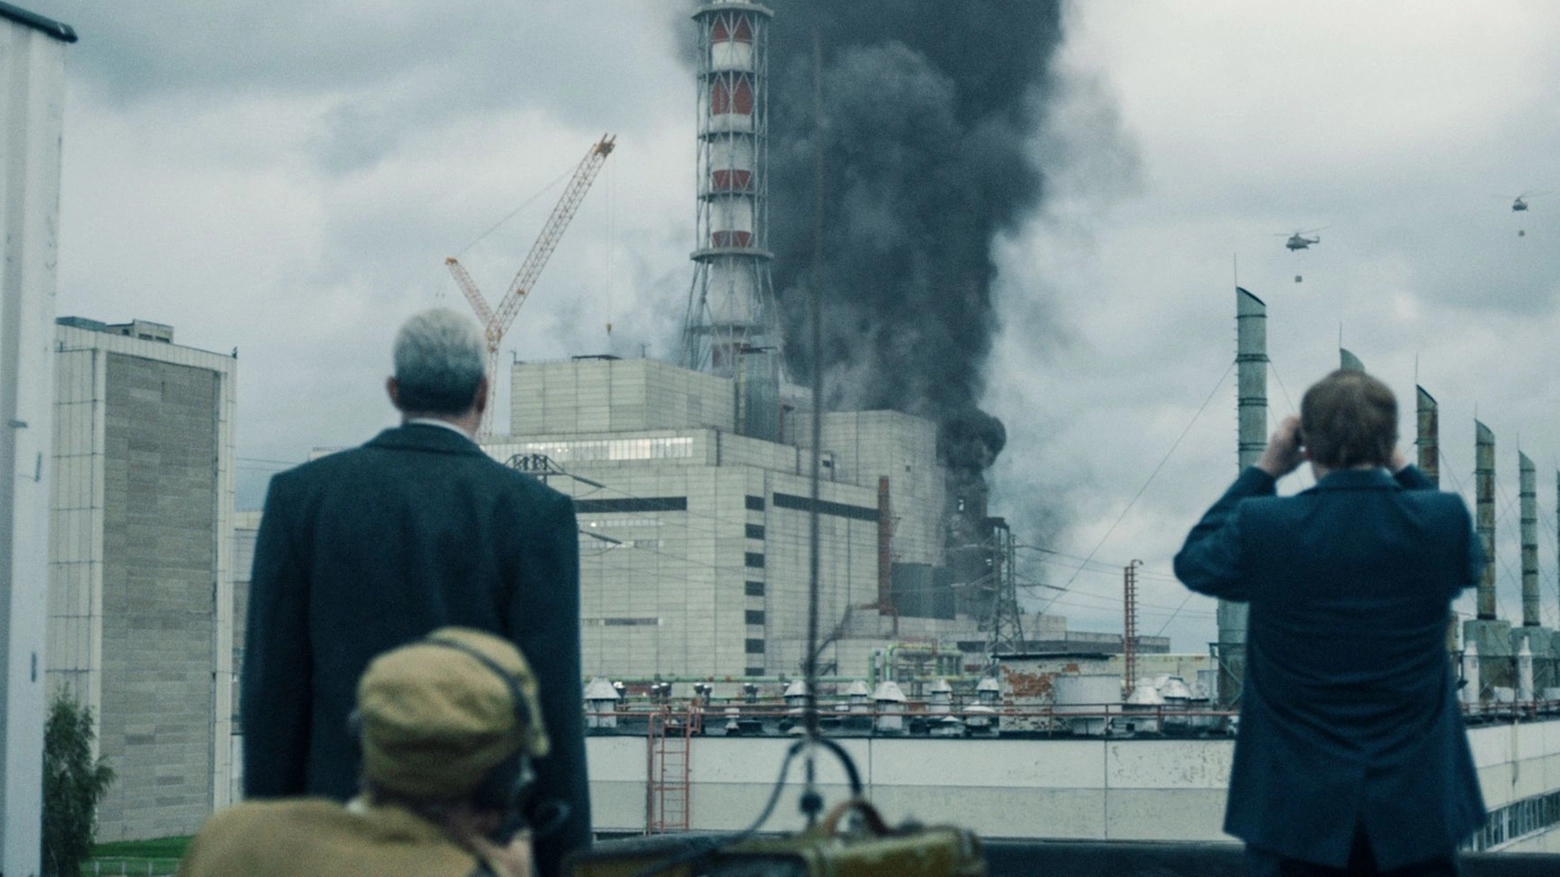 Una scena della serie tv Sky-Hbo dedicata a Chernobyl